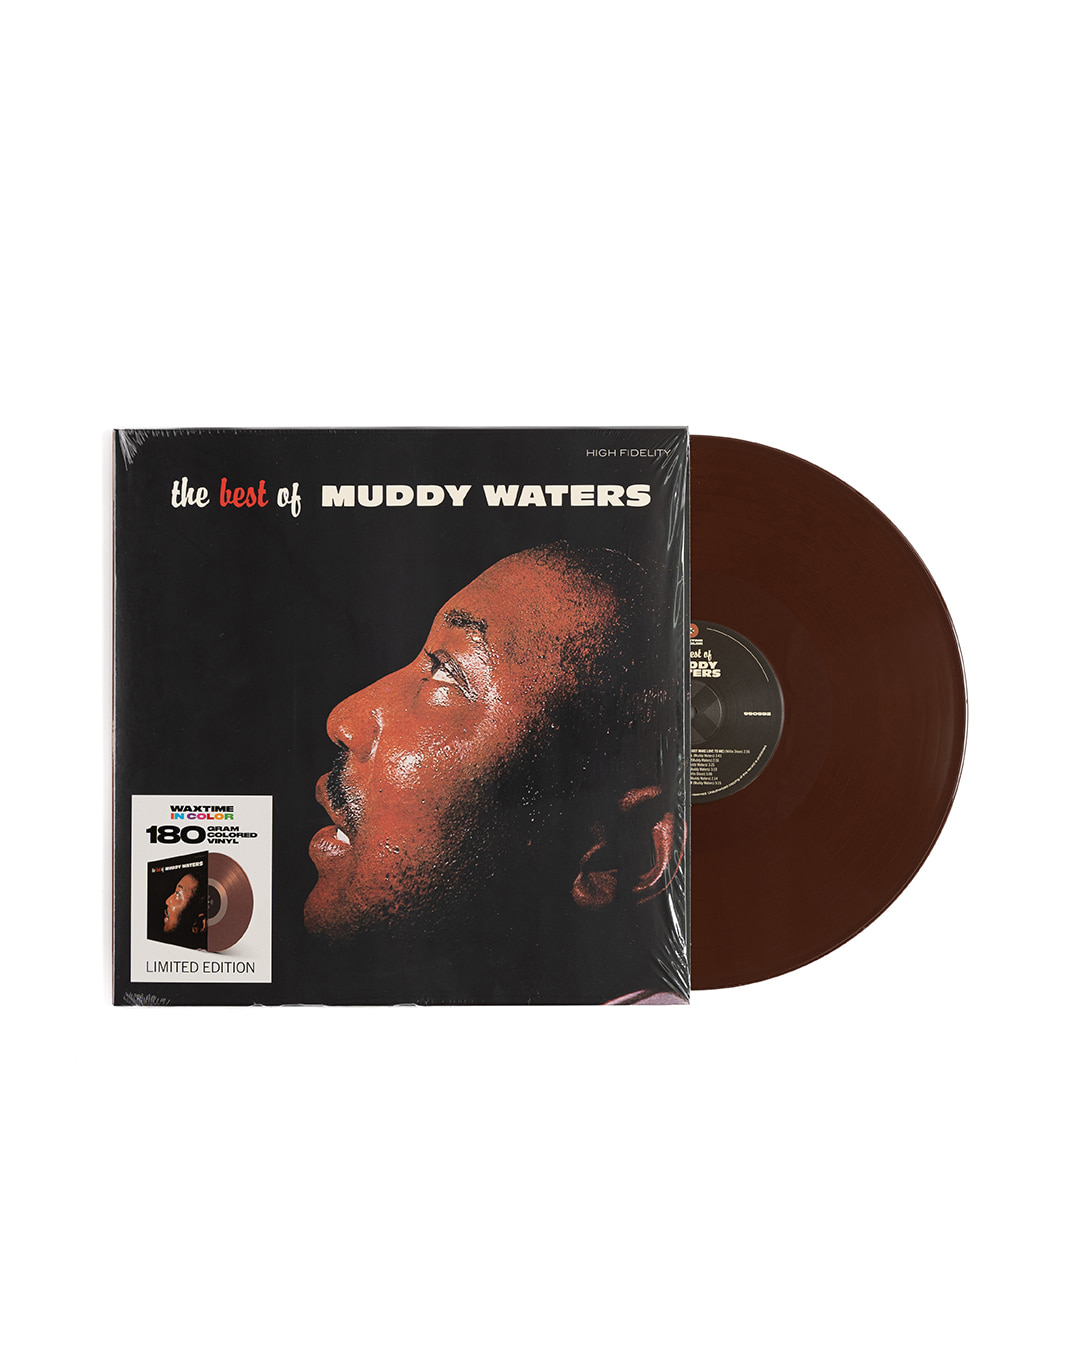 MUDDY WATERS - THE BEST OF MUDDY WATERS (brown disc)